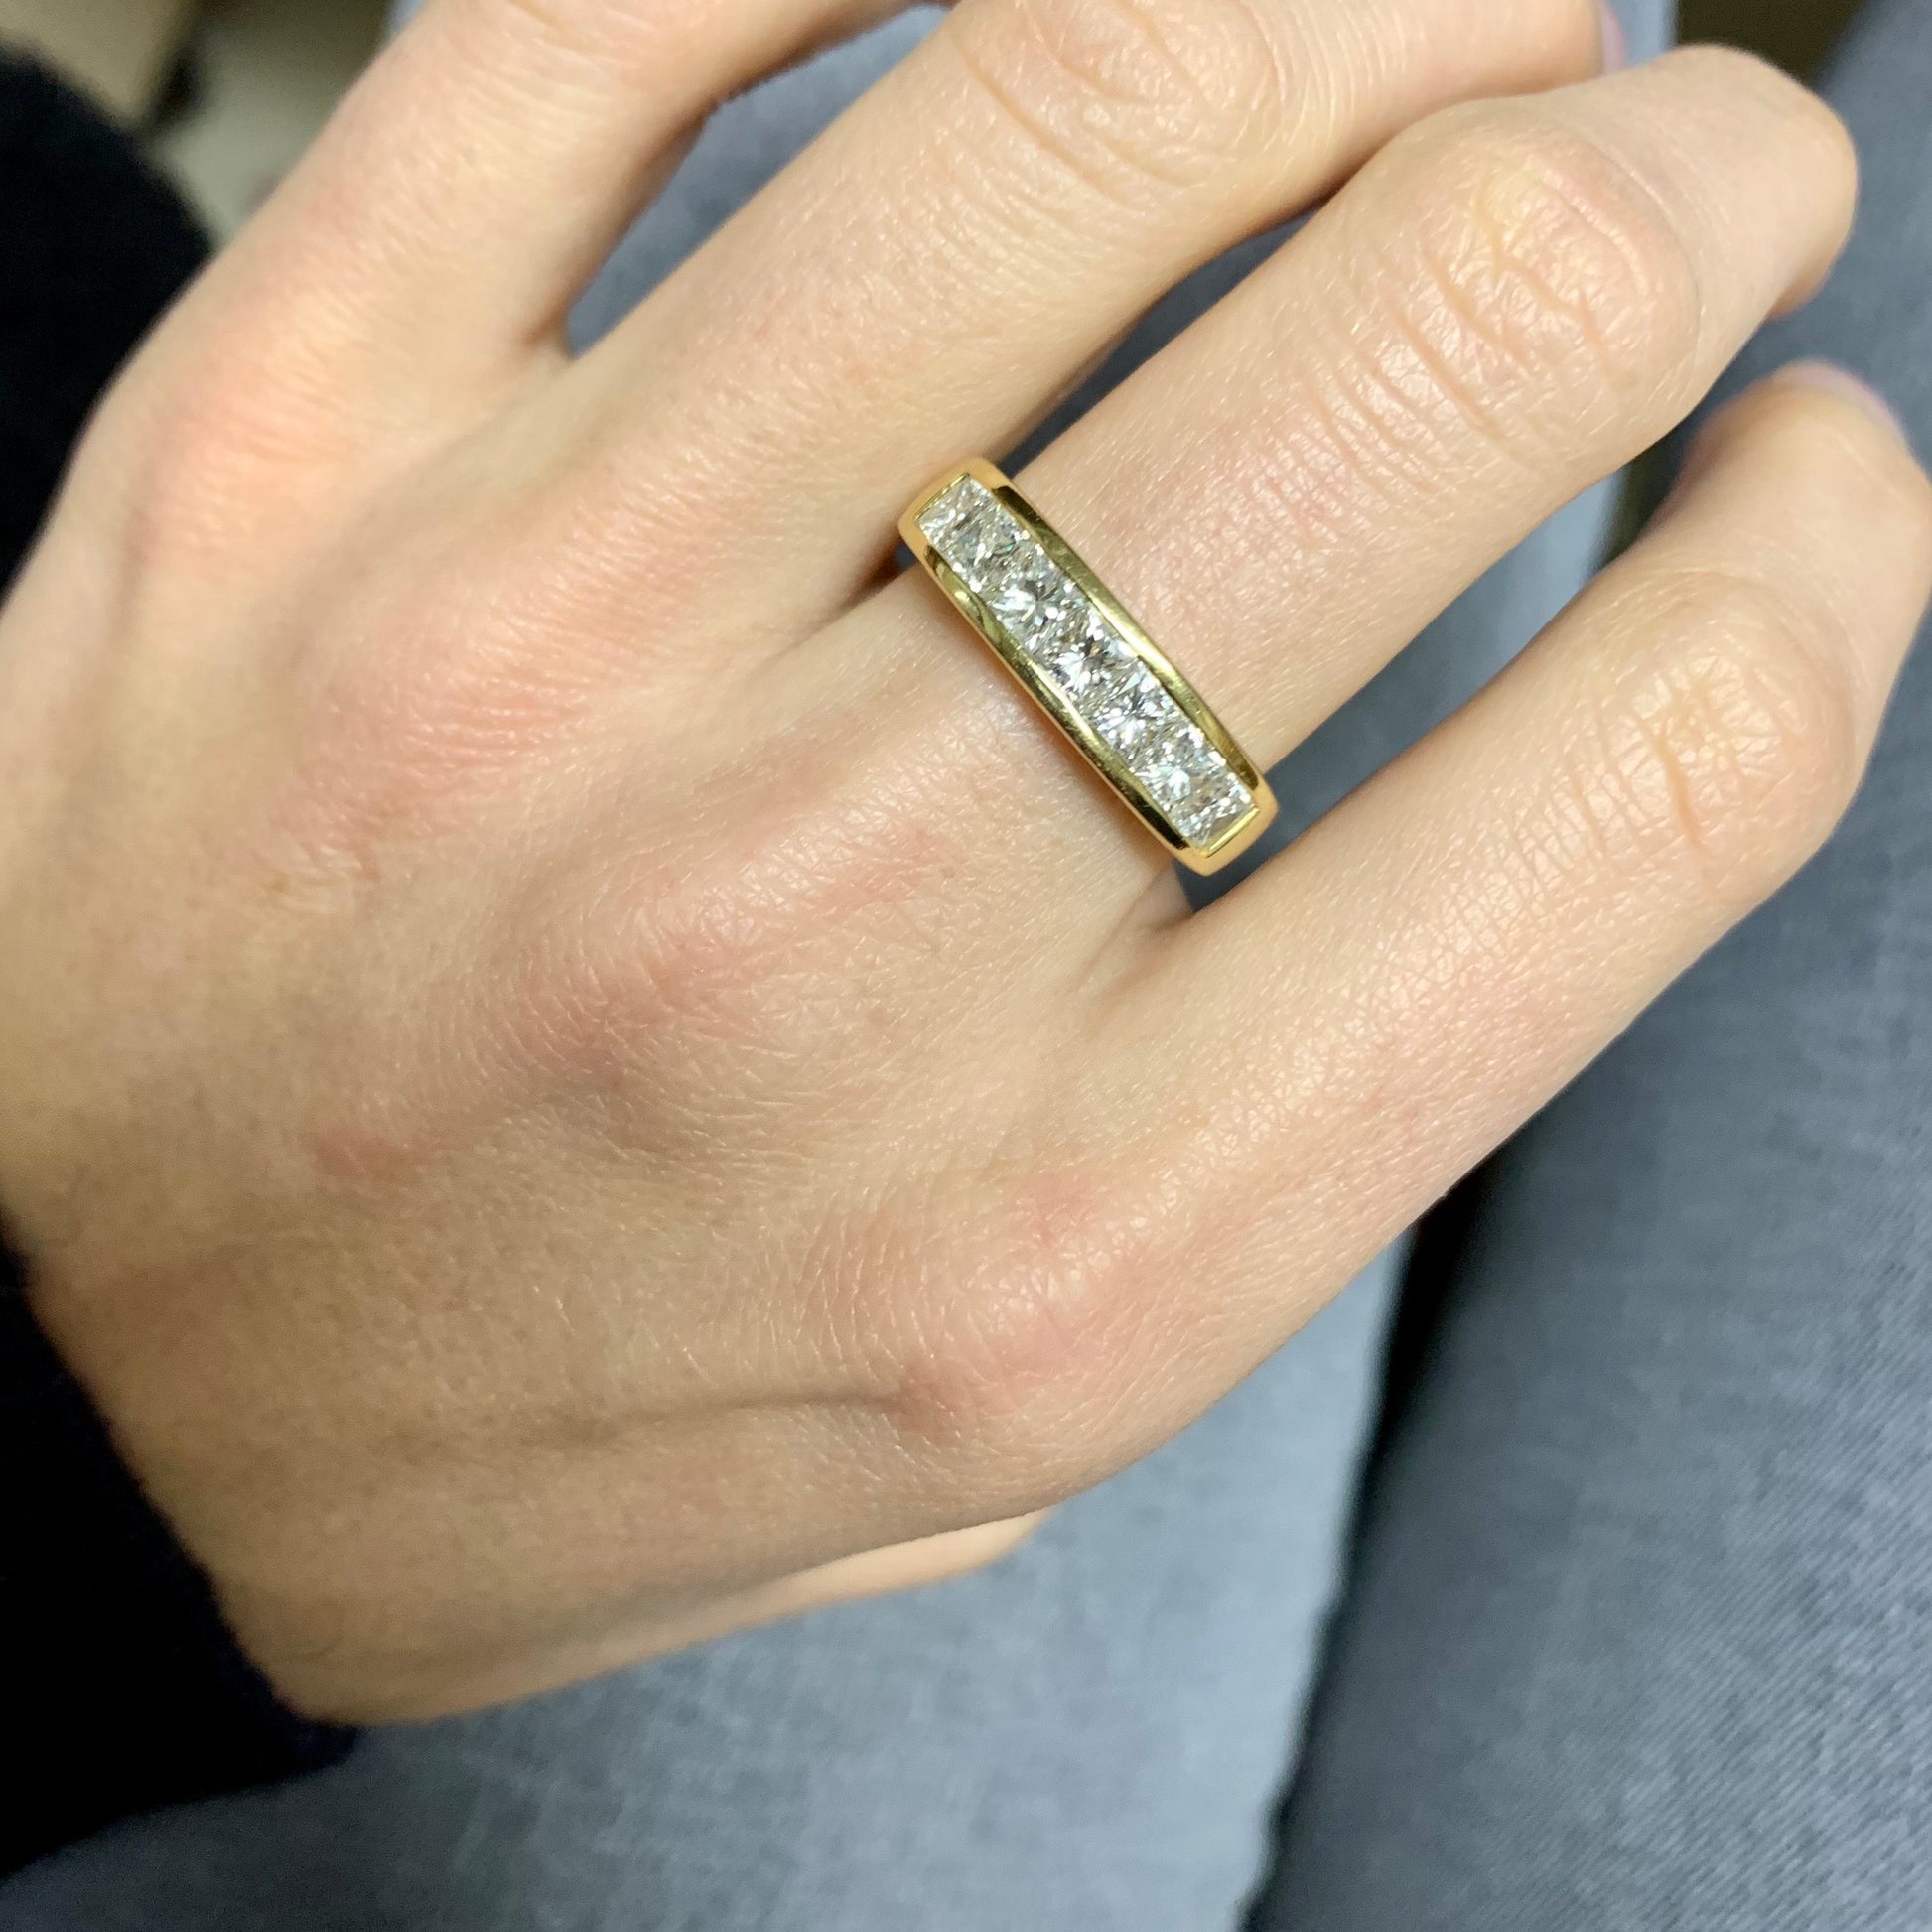 1980s 18KT Yellow Gold Diamond Ring on finger